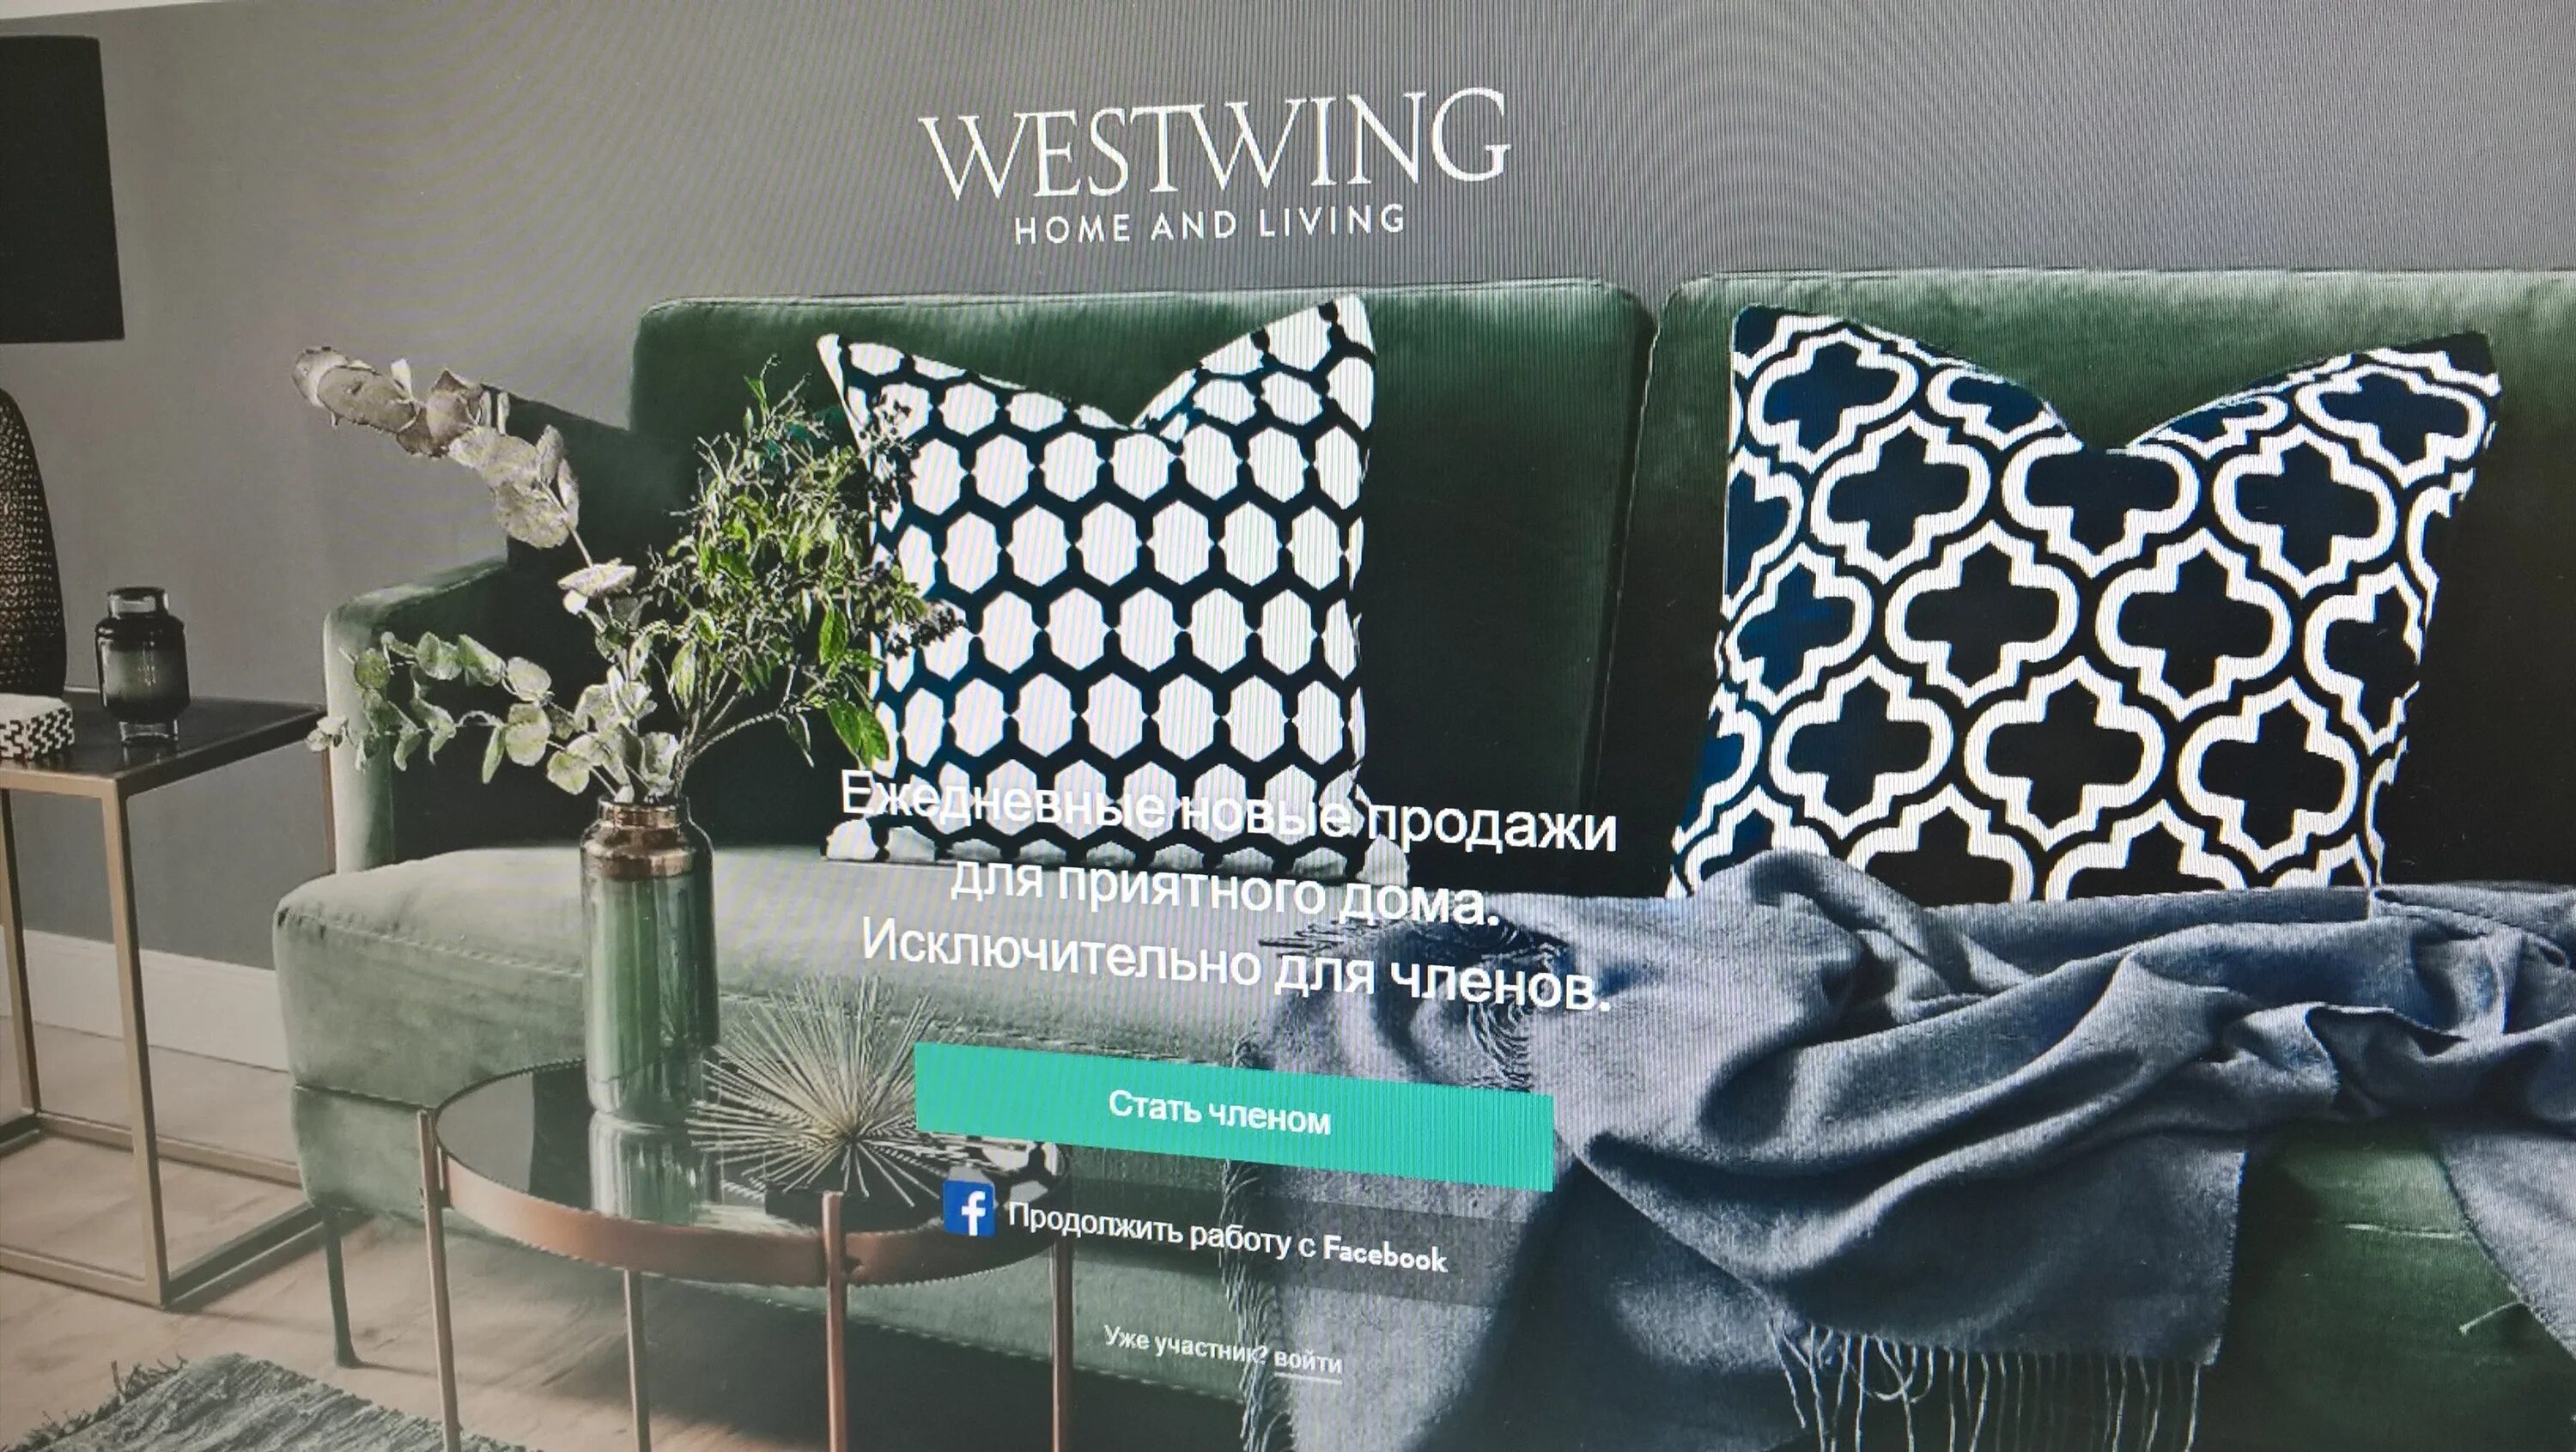 Вествинг интернет магазин. Westwing интернет магазин. Westwing Home and Living генеральный директор. Магазин вестинг интерьер интернет каталог.